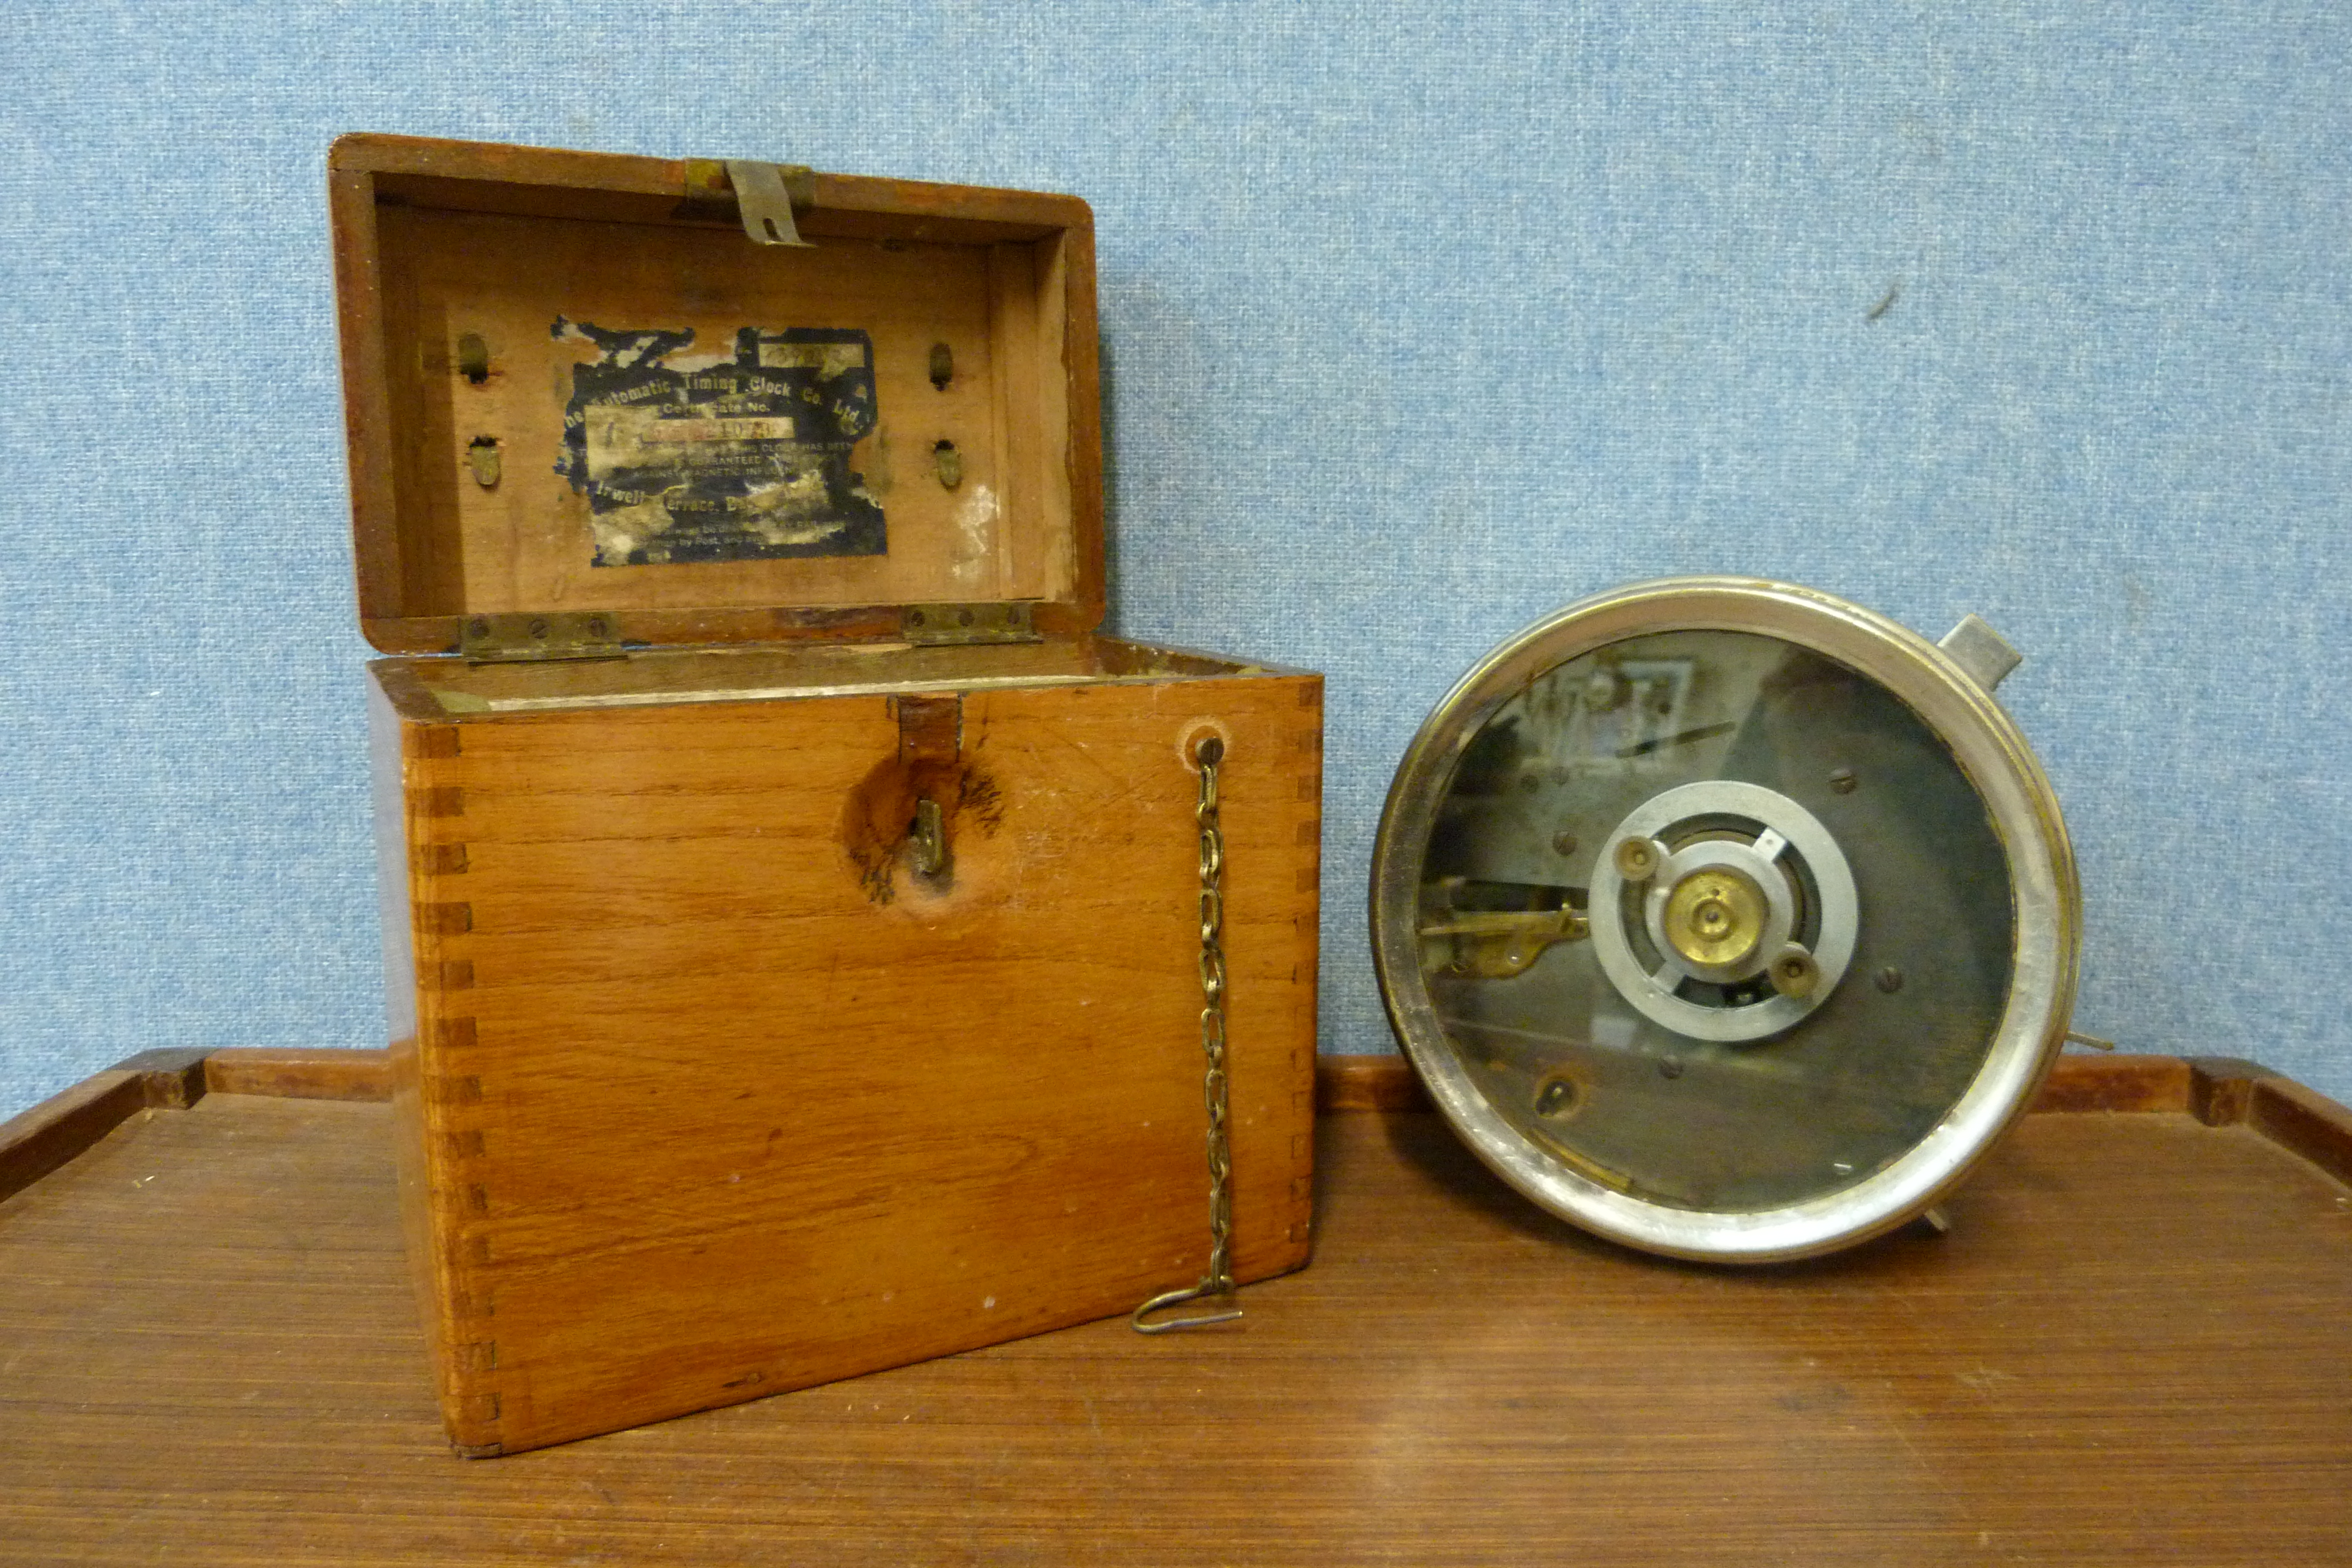 A vintage cased pigeon racing clock